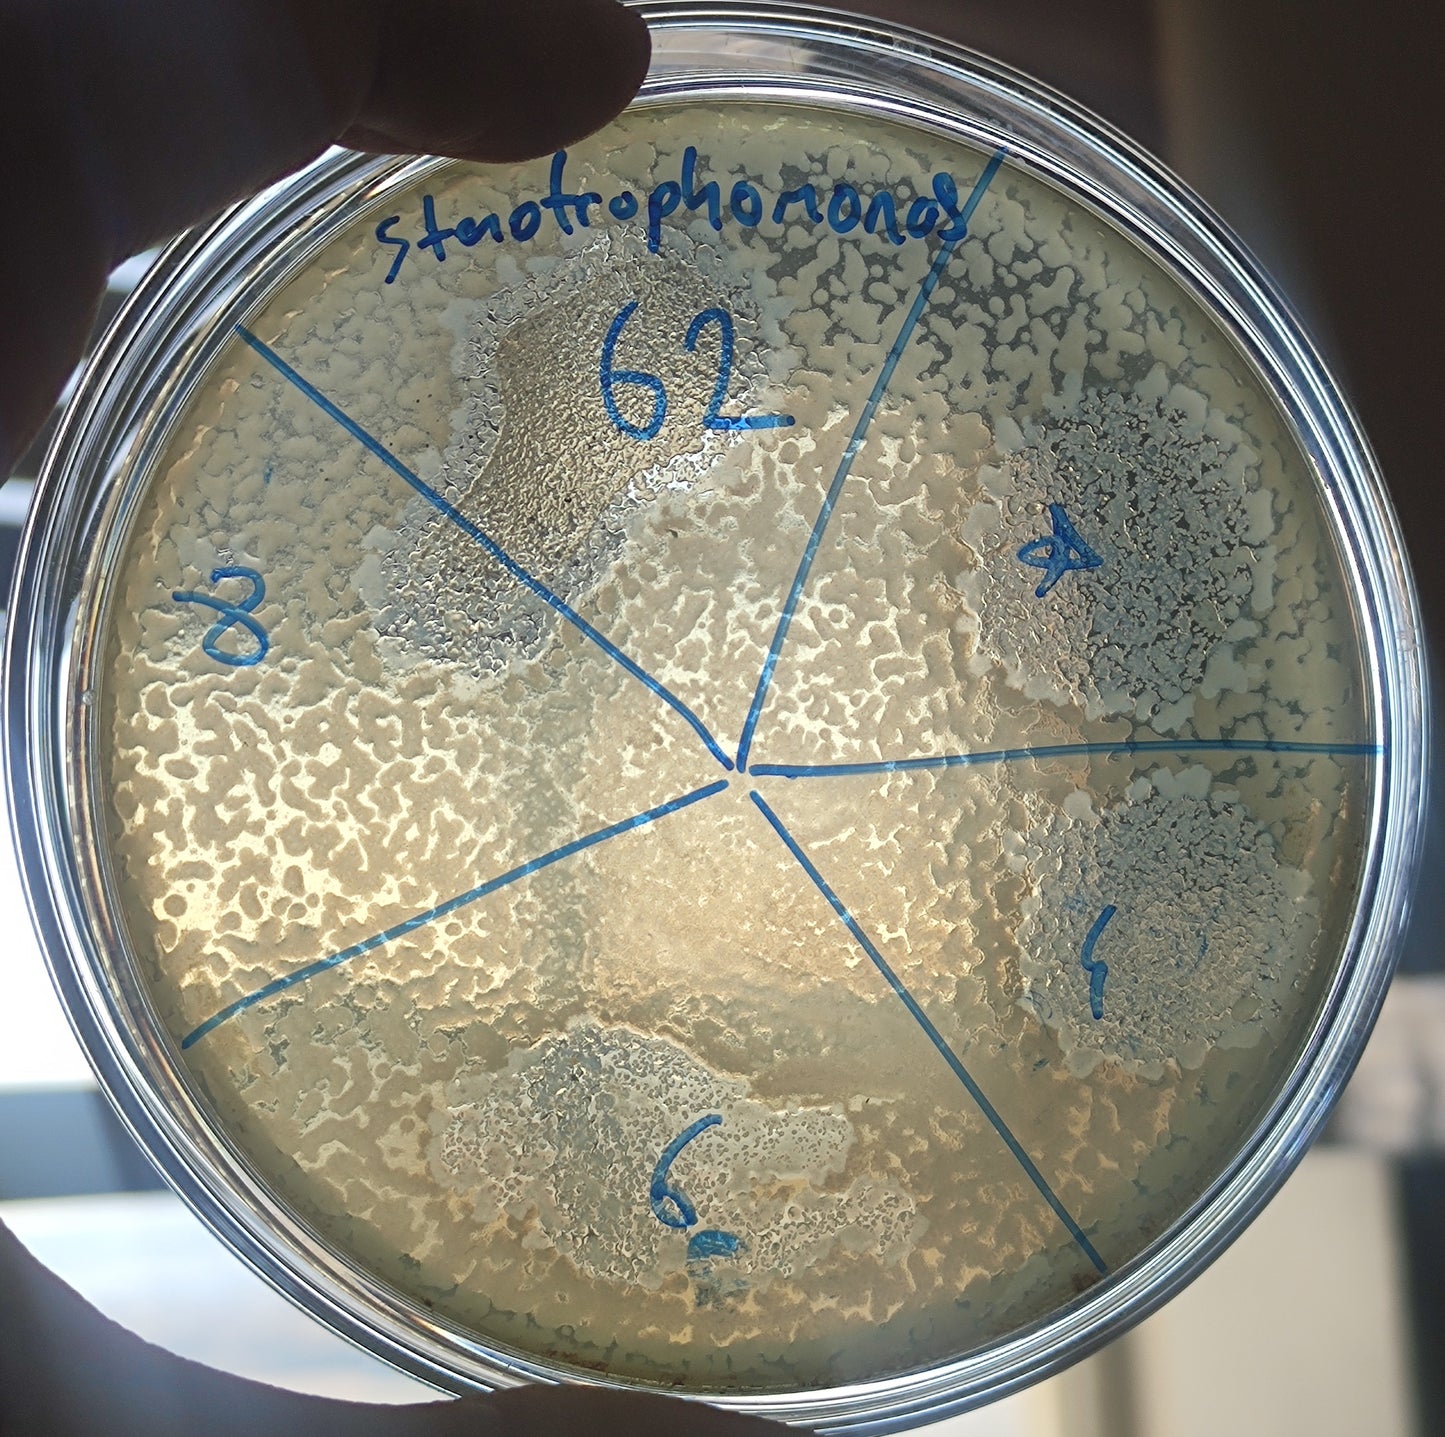 Stenotrophomonas maltophilia bacteriophage 200062D